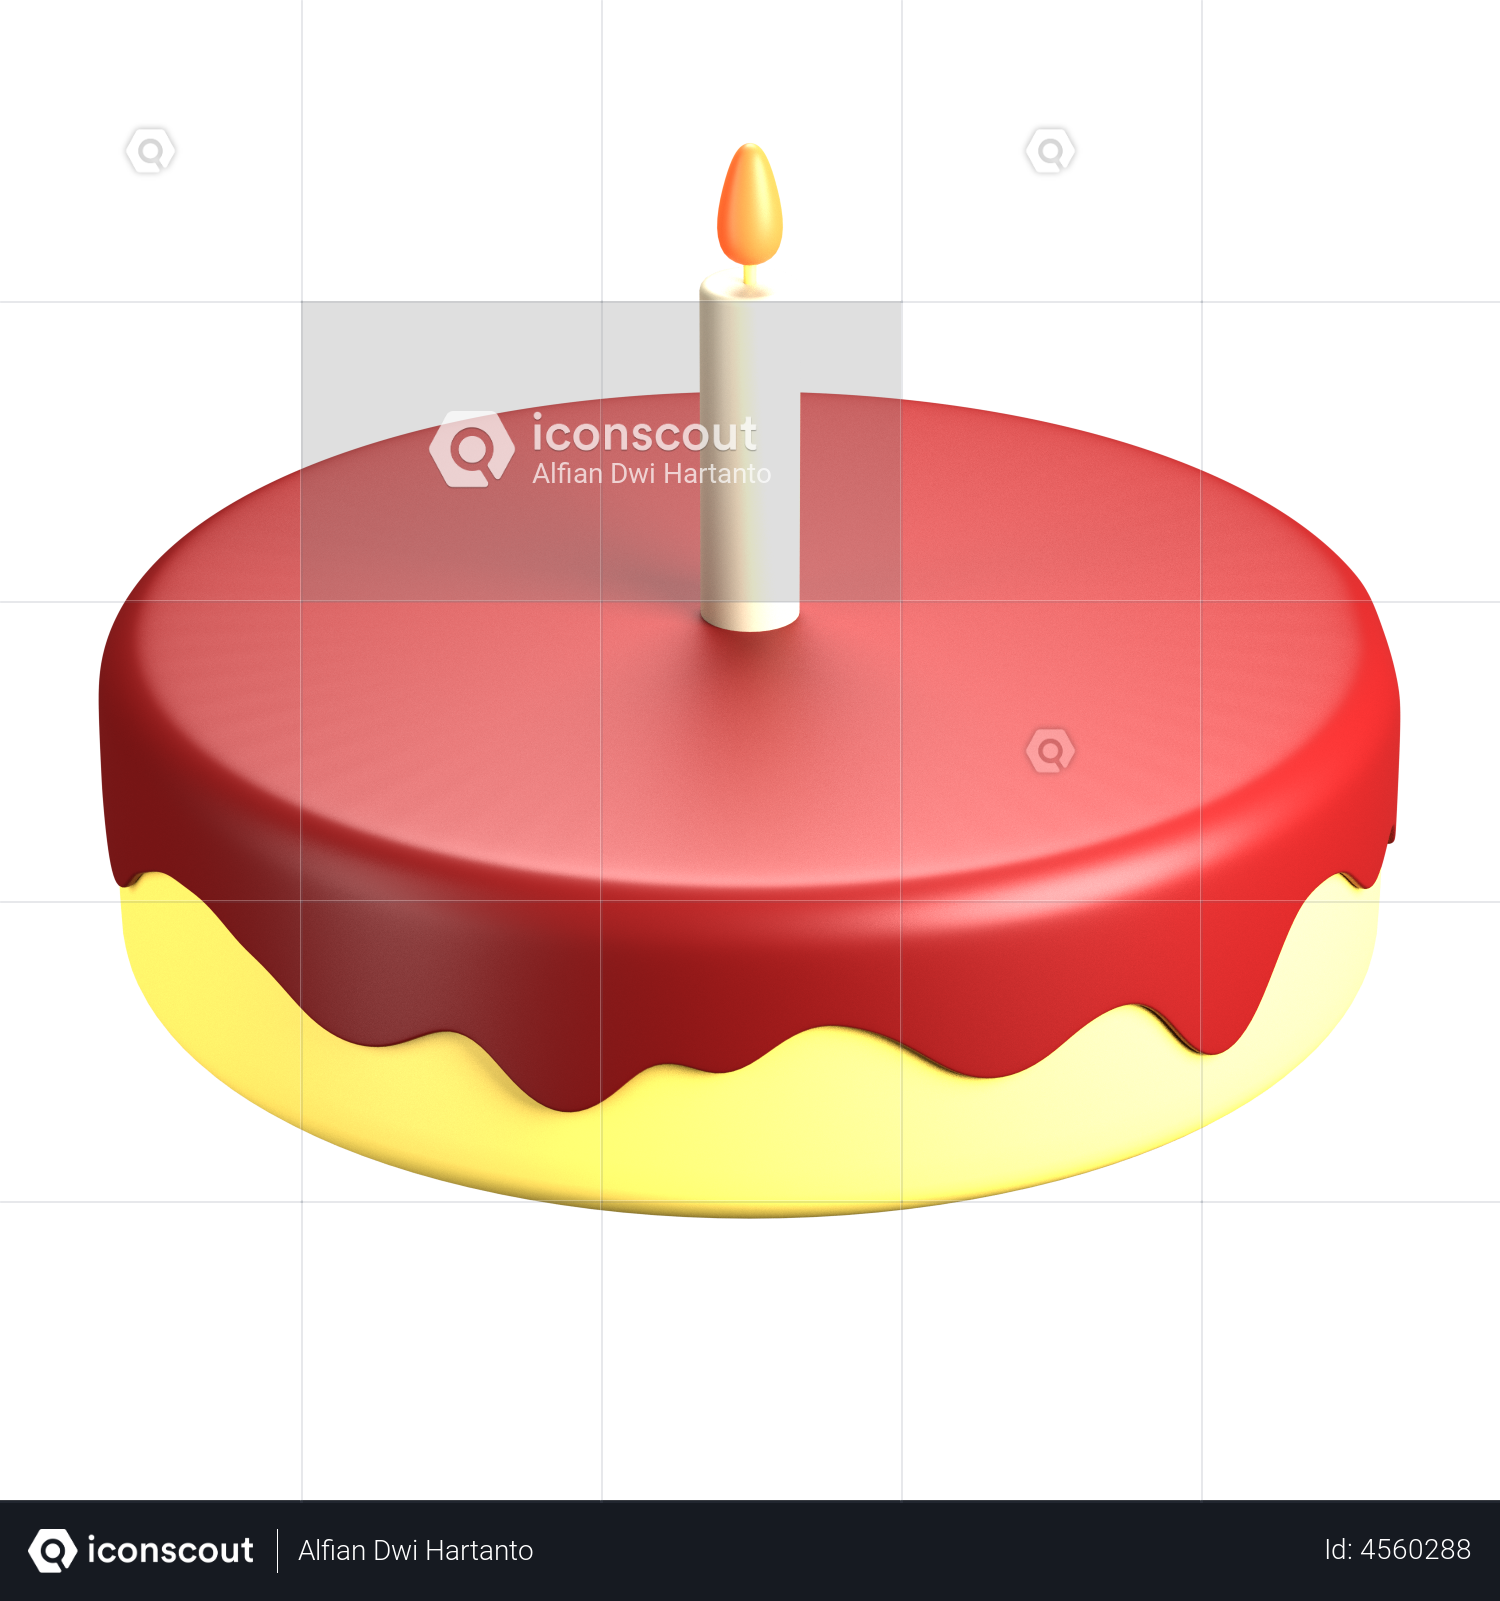 Birthday cake Wedding cake Sugar cake Torte, Birthday Cake, chocolate cake,  baked Goods, wish png | PNGEgg